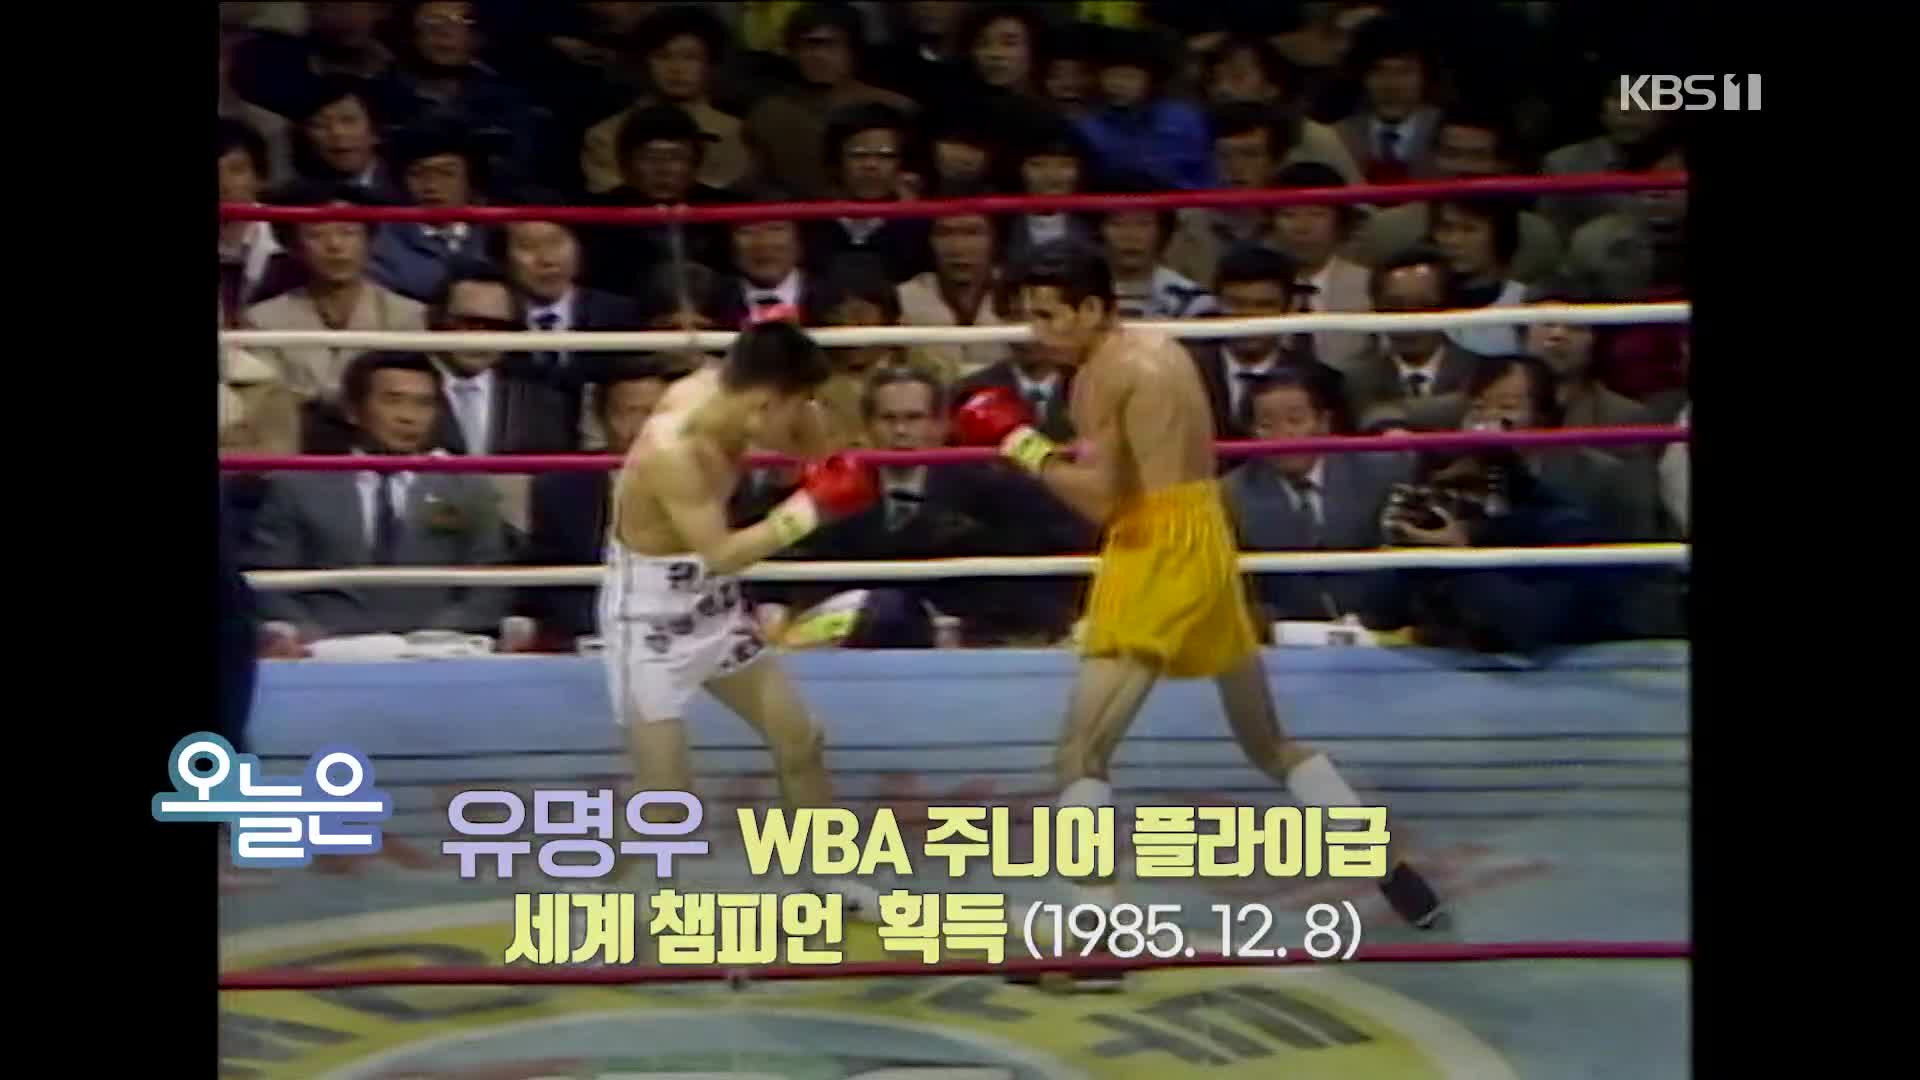 [오늘은] 유명우 WBA 주니어 플라이급 세계 챔피언 획득 (1985.12.8)